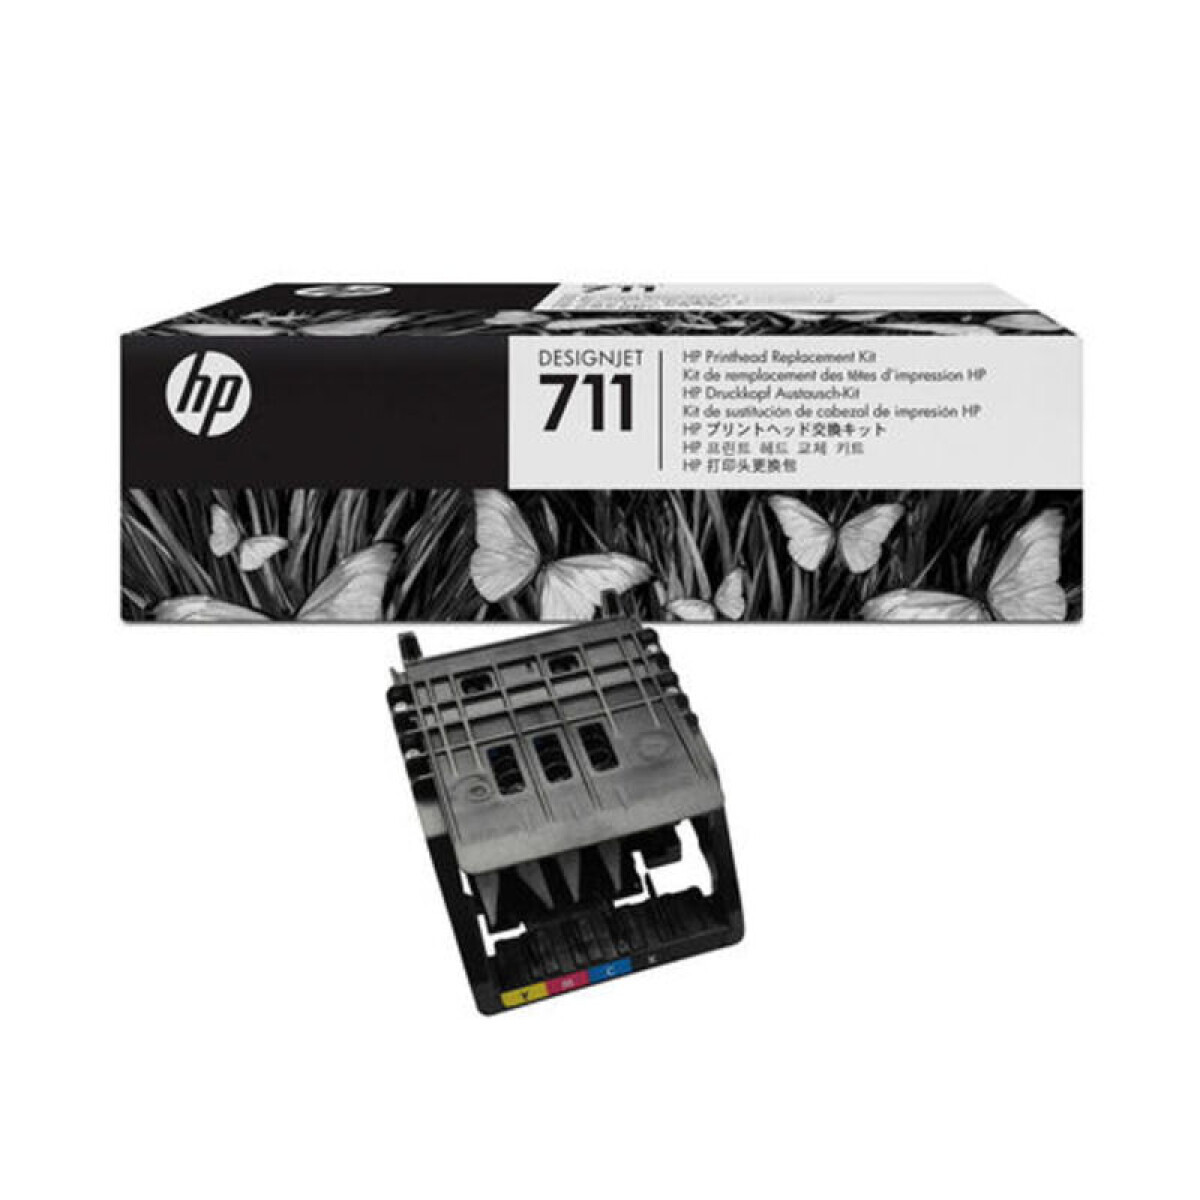 HP C1Q10A (711) KIT CABEZAL T120/T520/T530 UK - 2593 